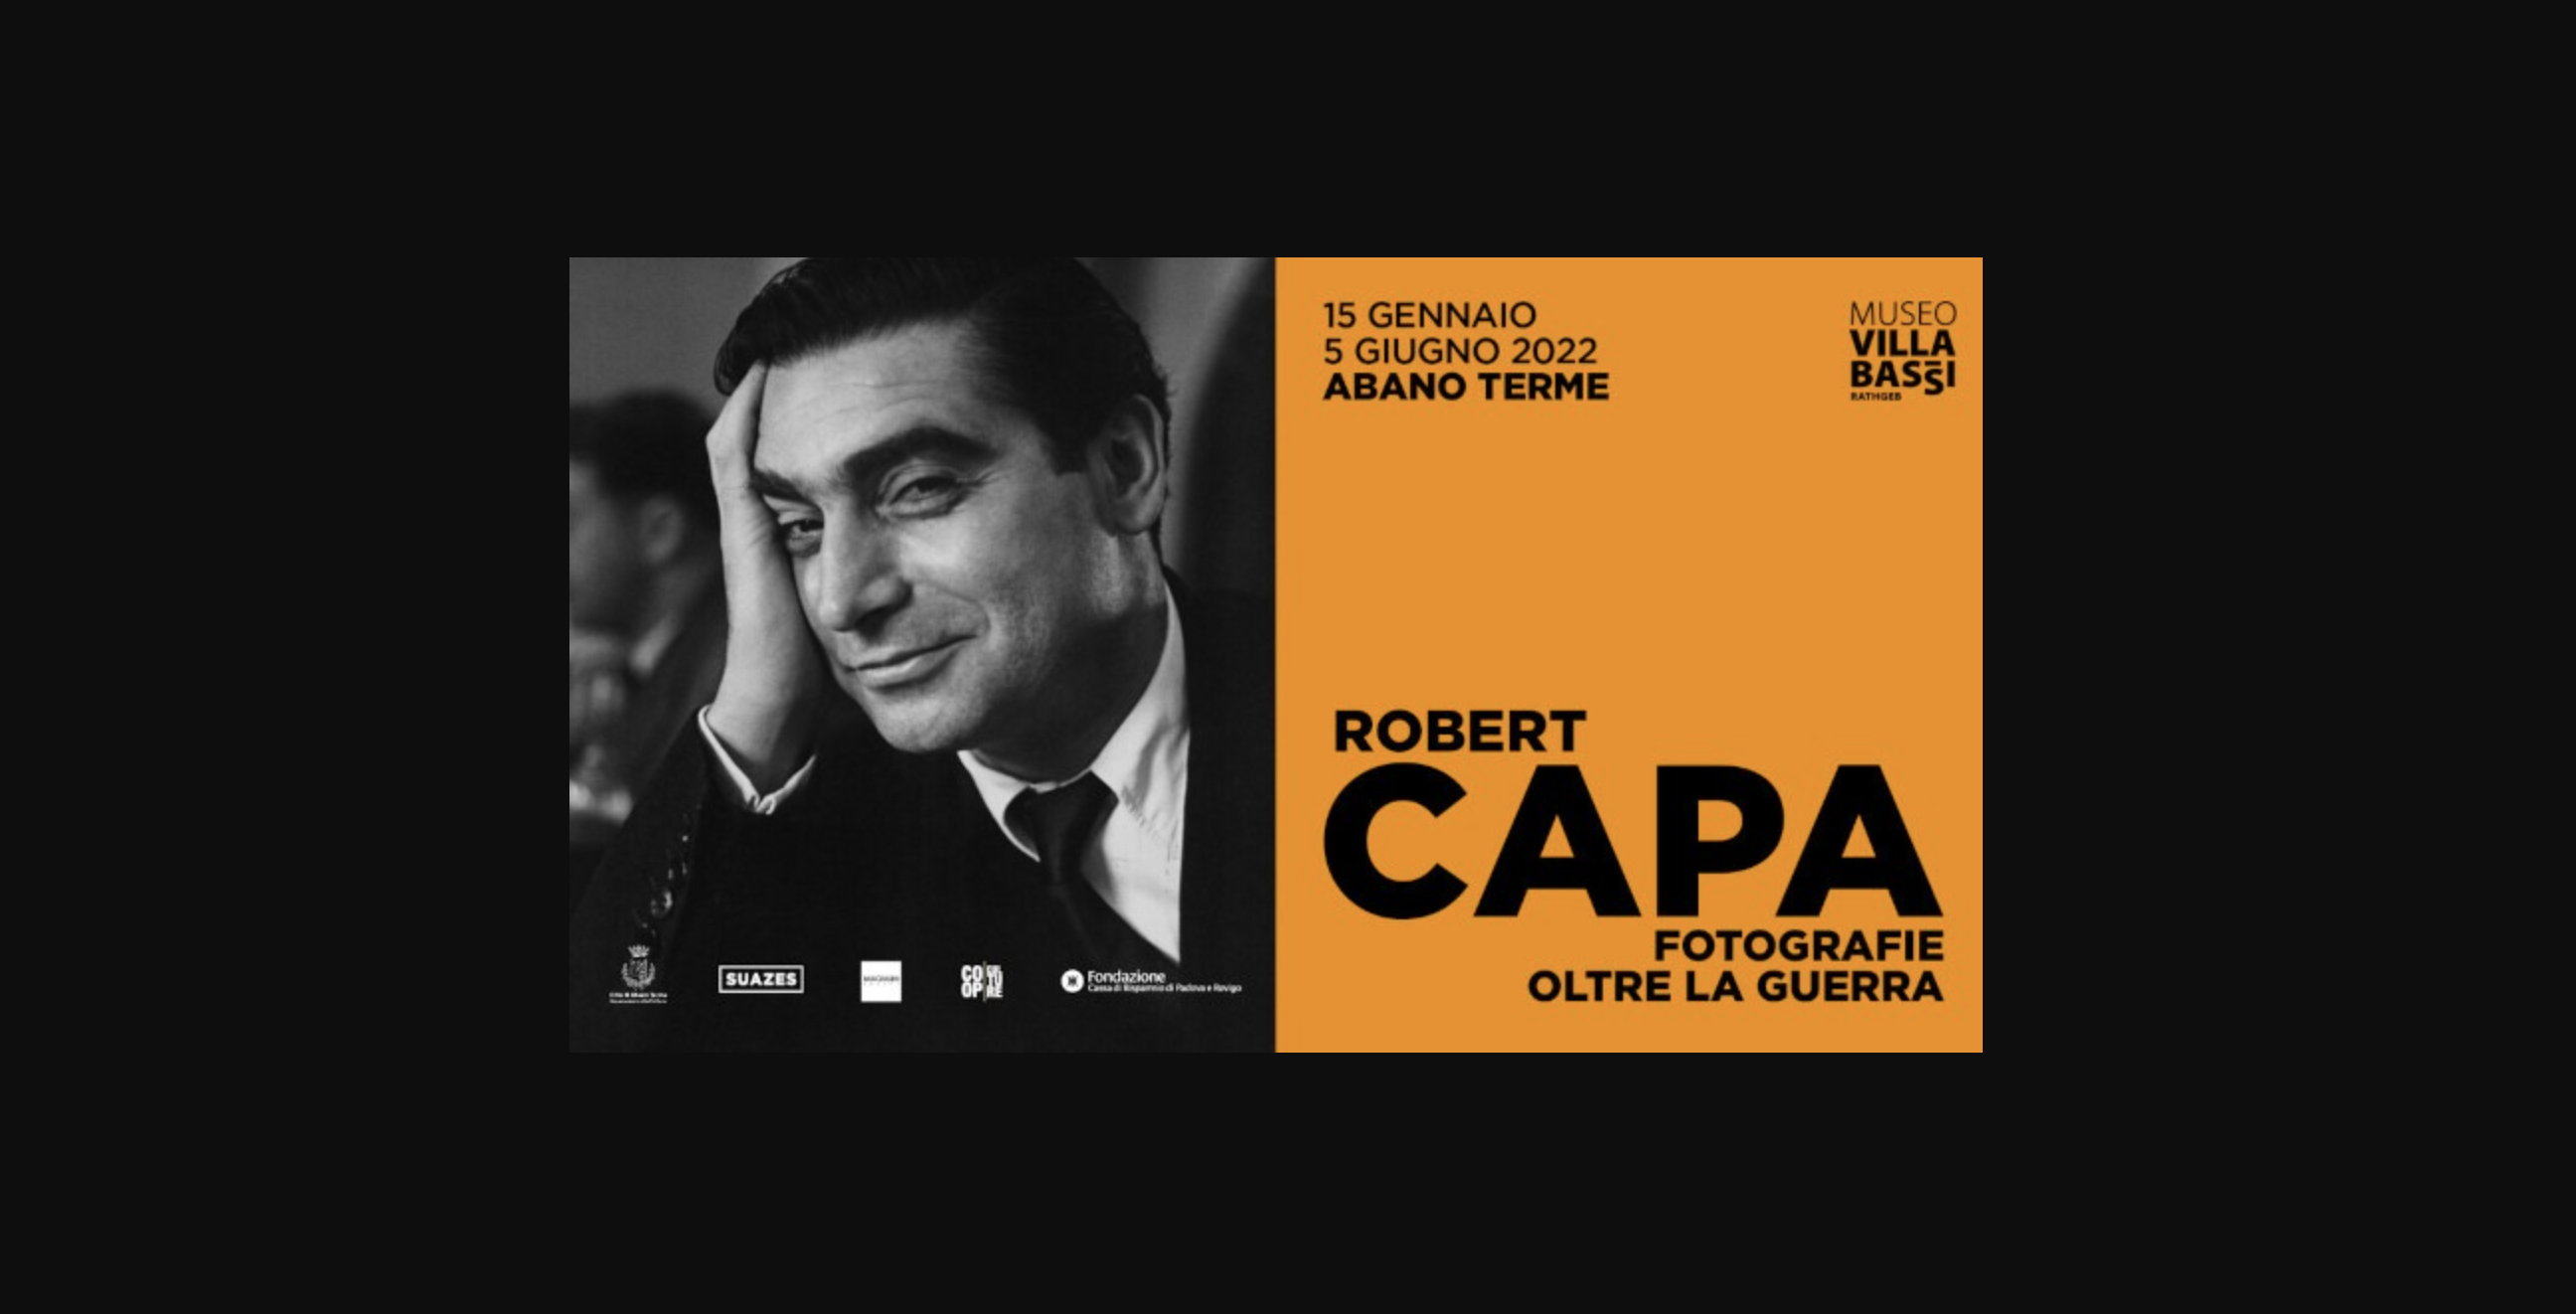 Robert Capa, fotografie oltre la guerra. Ad Abano Terme la mostra dedicata al mito di Capa prolungata fino al 26 giugno